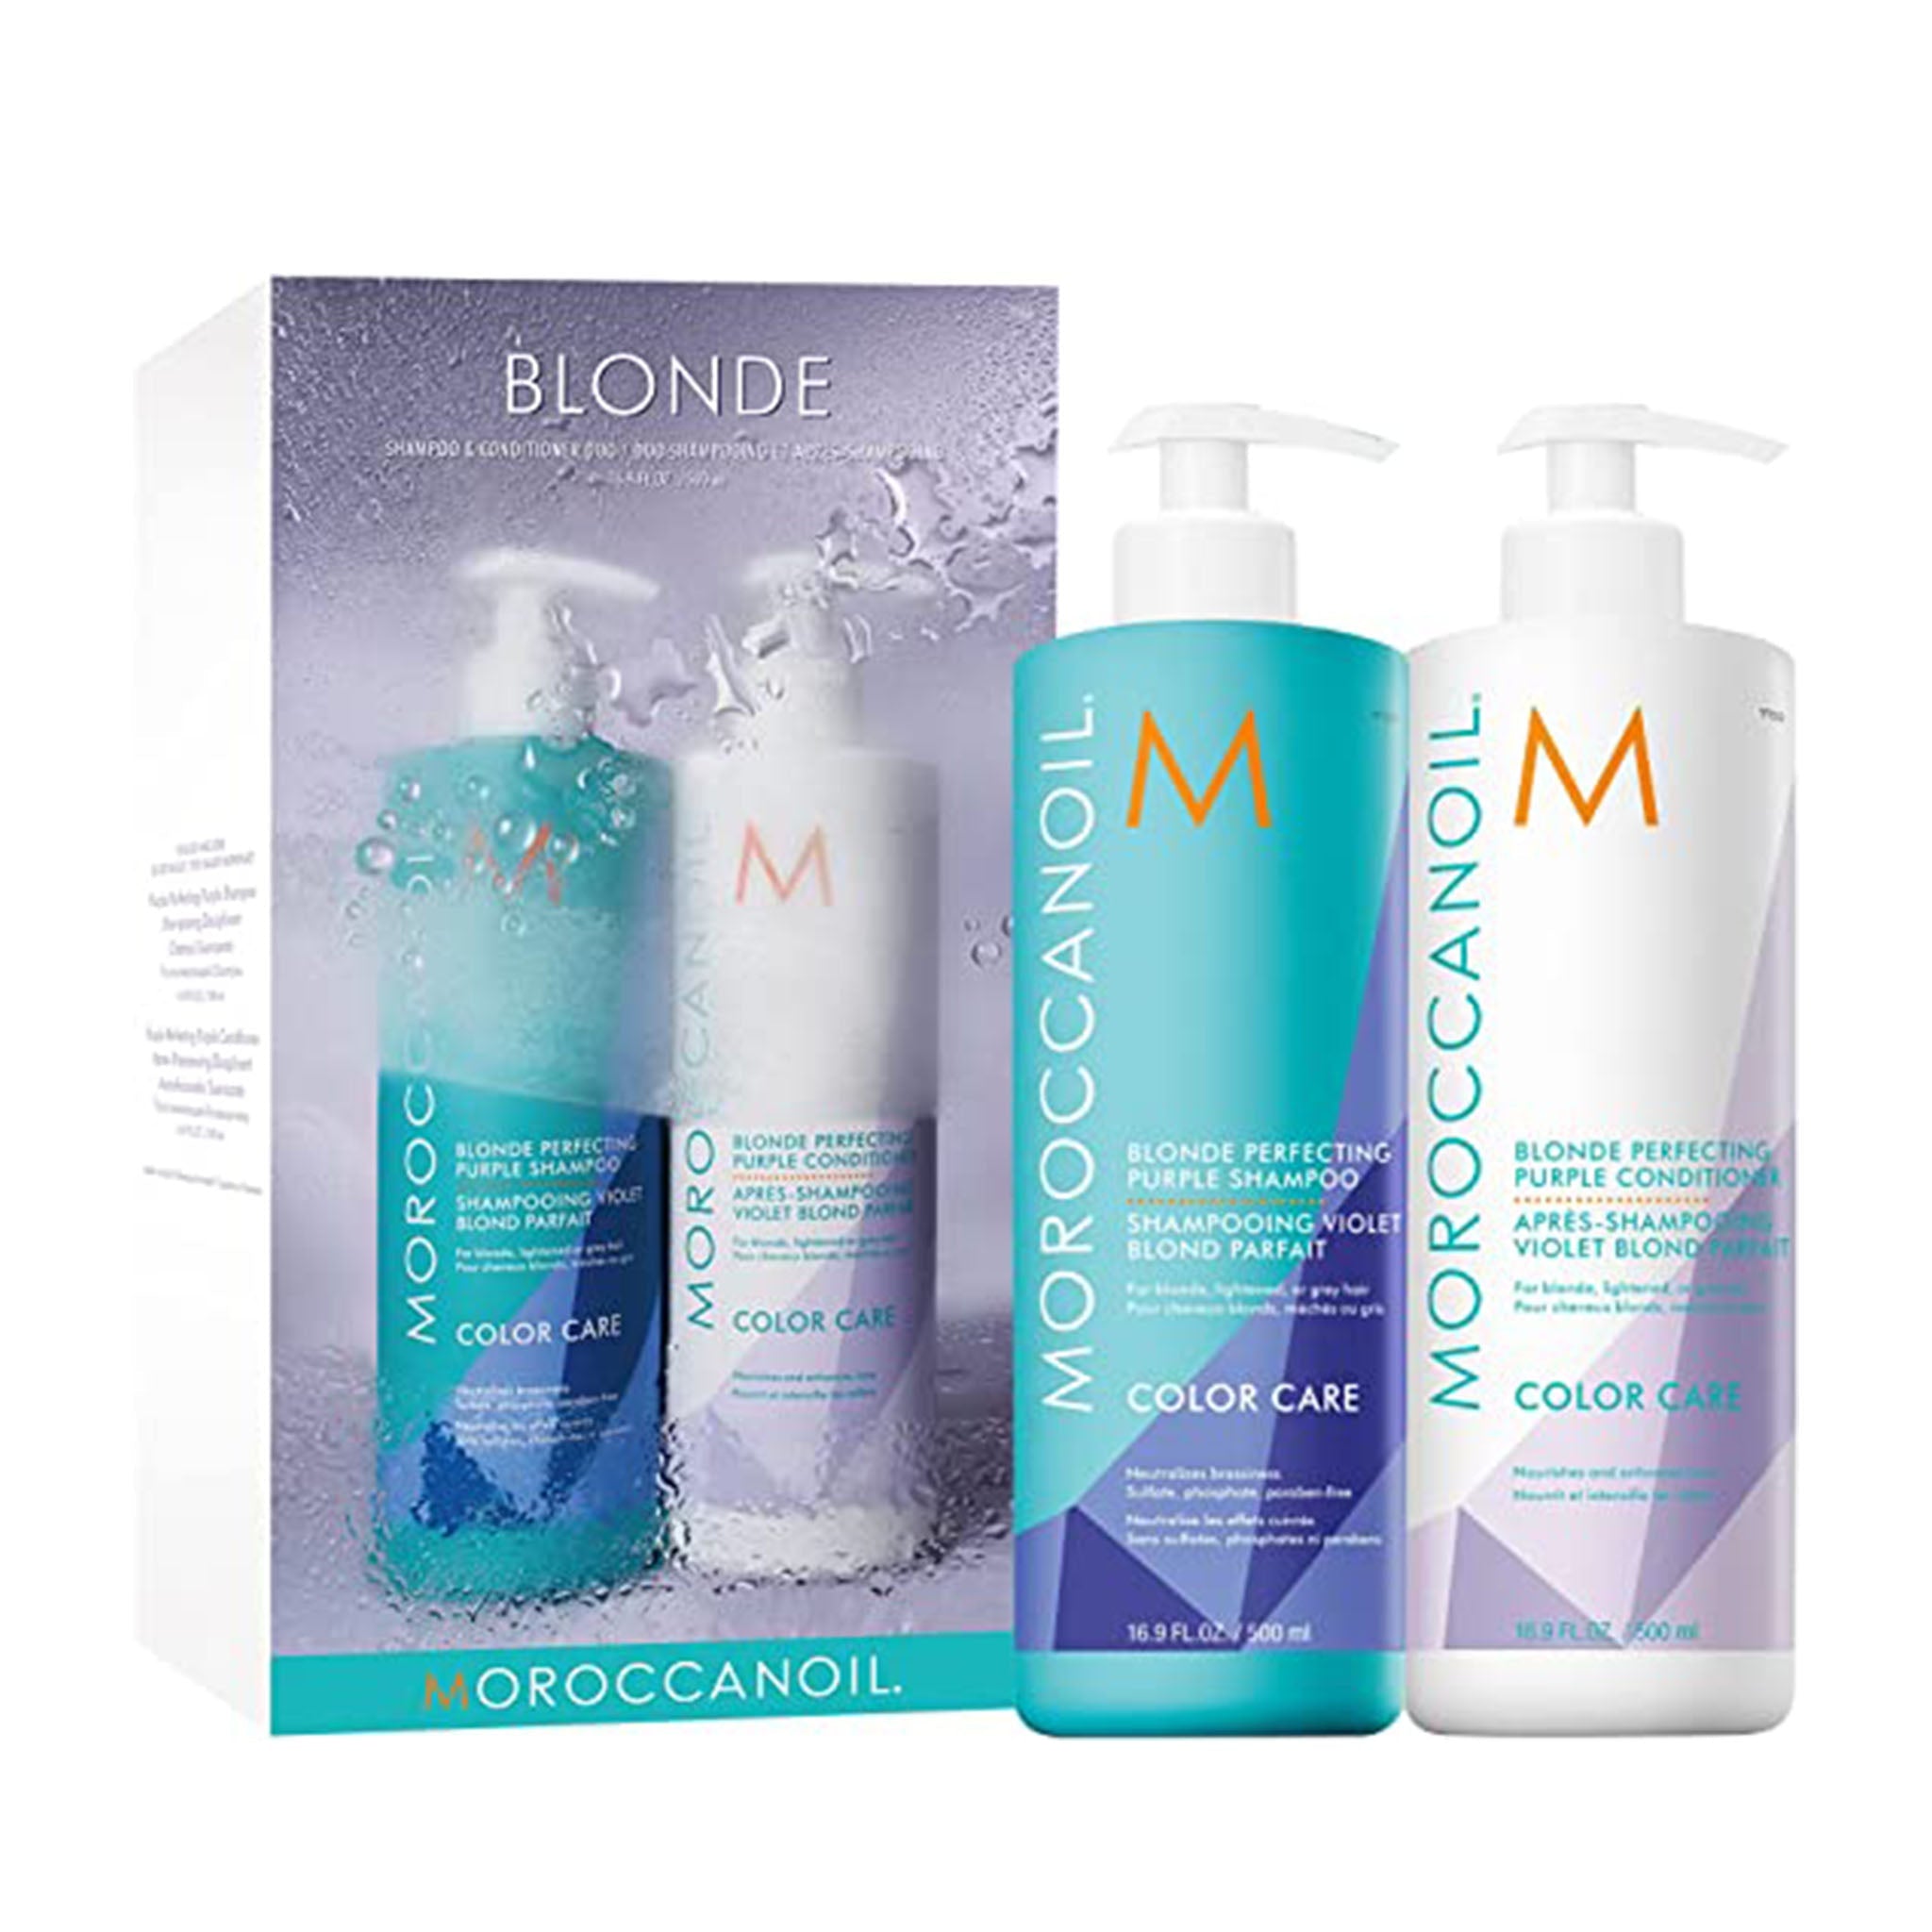 Moroccanoil. Shampoing Violet Blond Parfait Color Care - 500 ml - Concept C. Shop